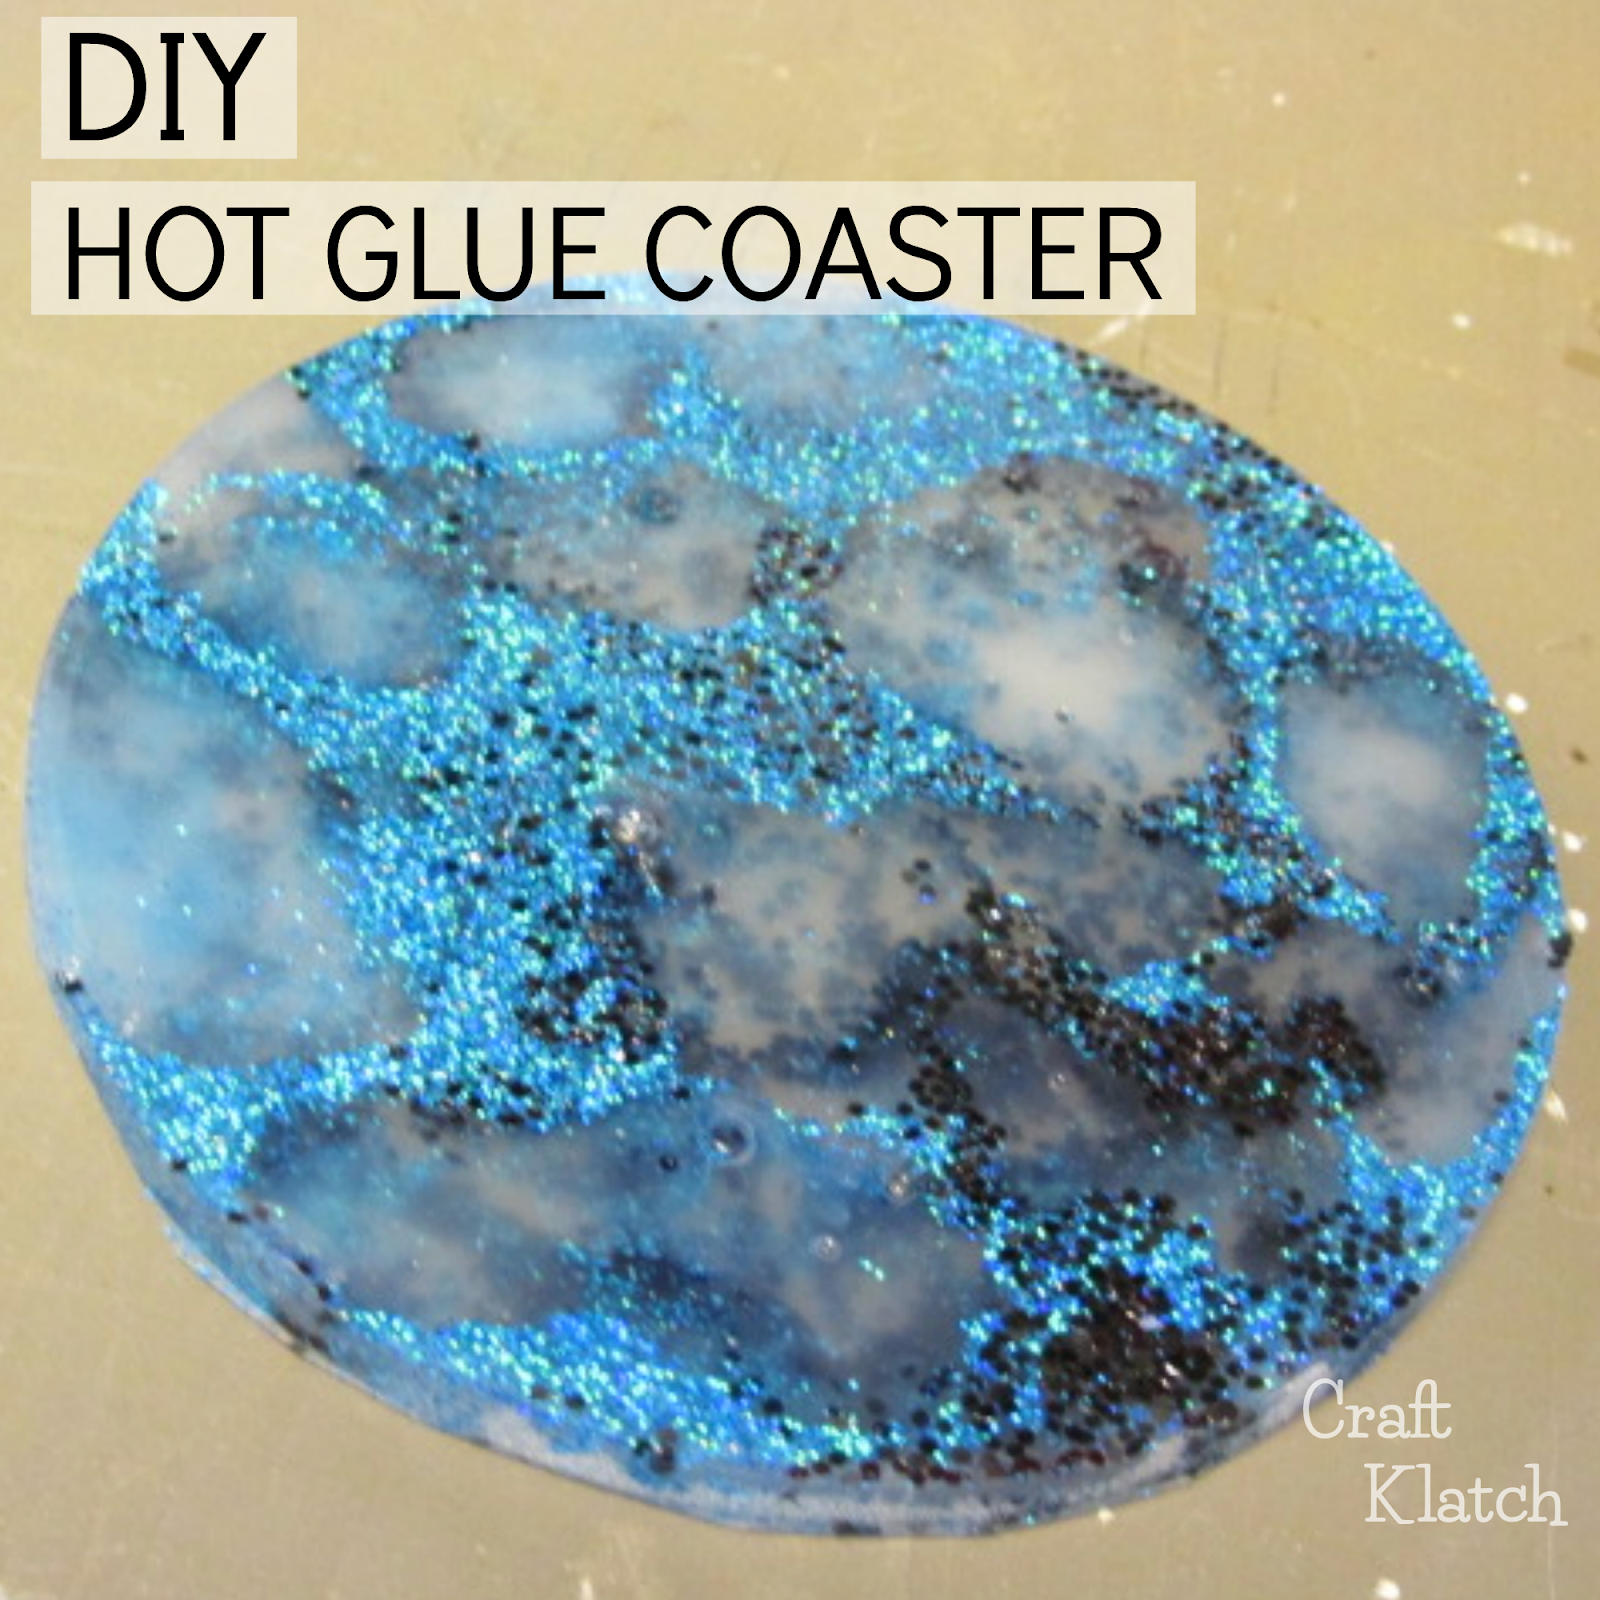 How to Make a Hot Glue Glitter Coaster Craft Tutorial - Craft Klatch